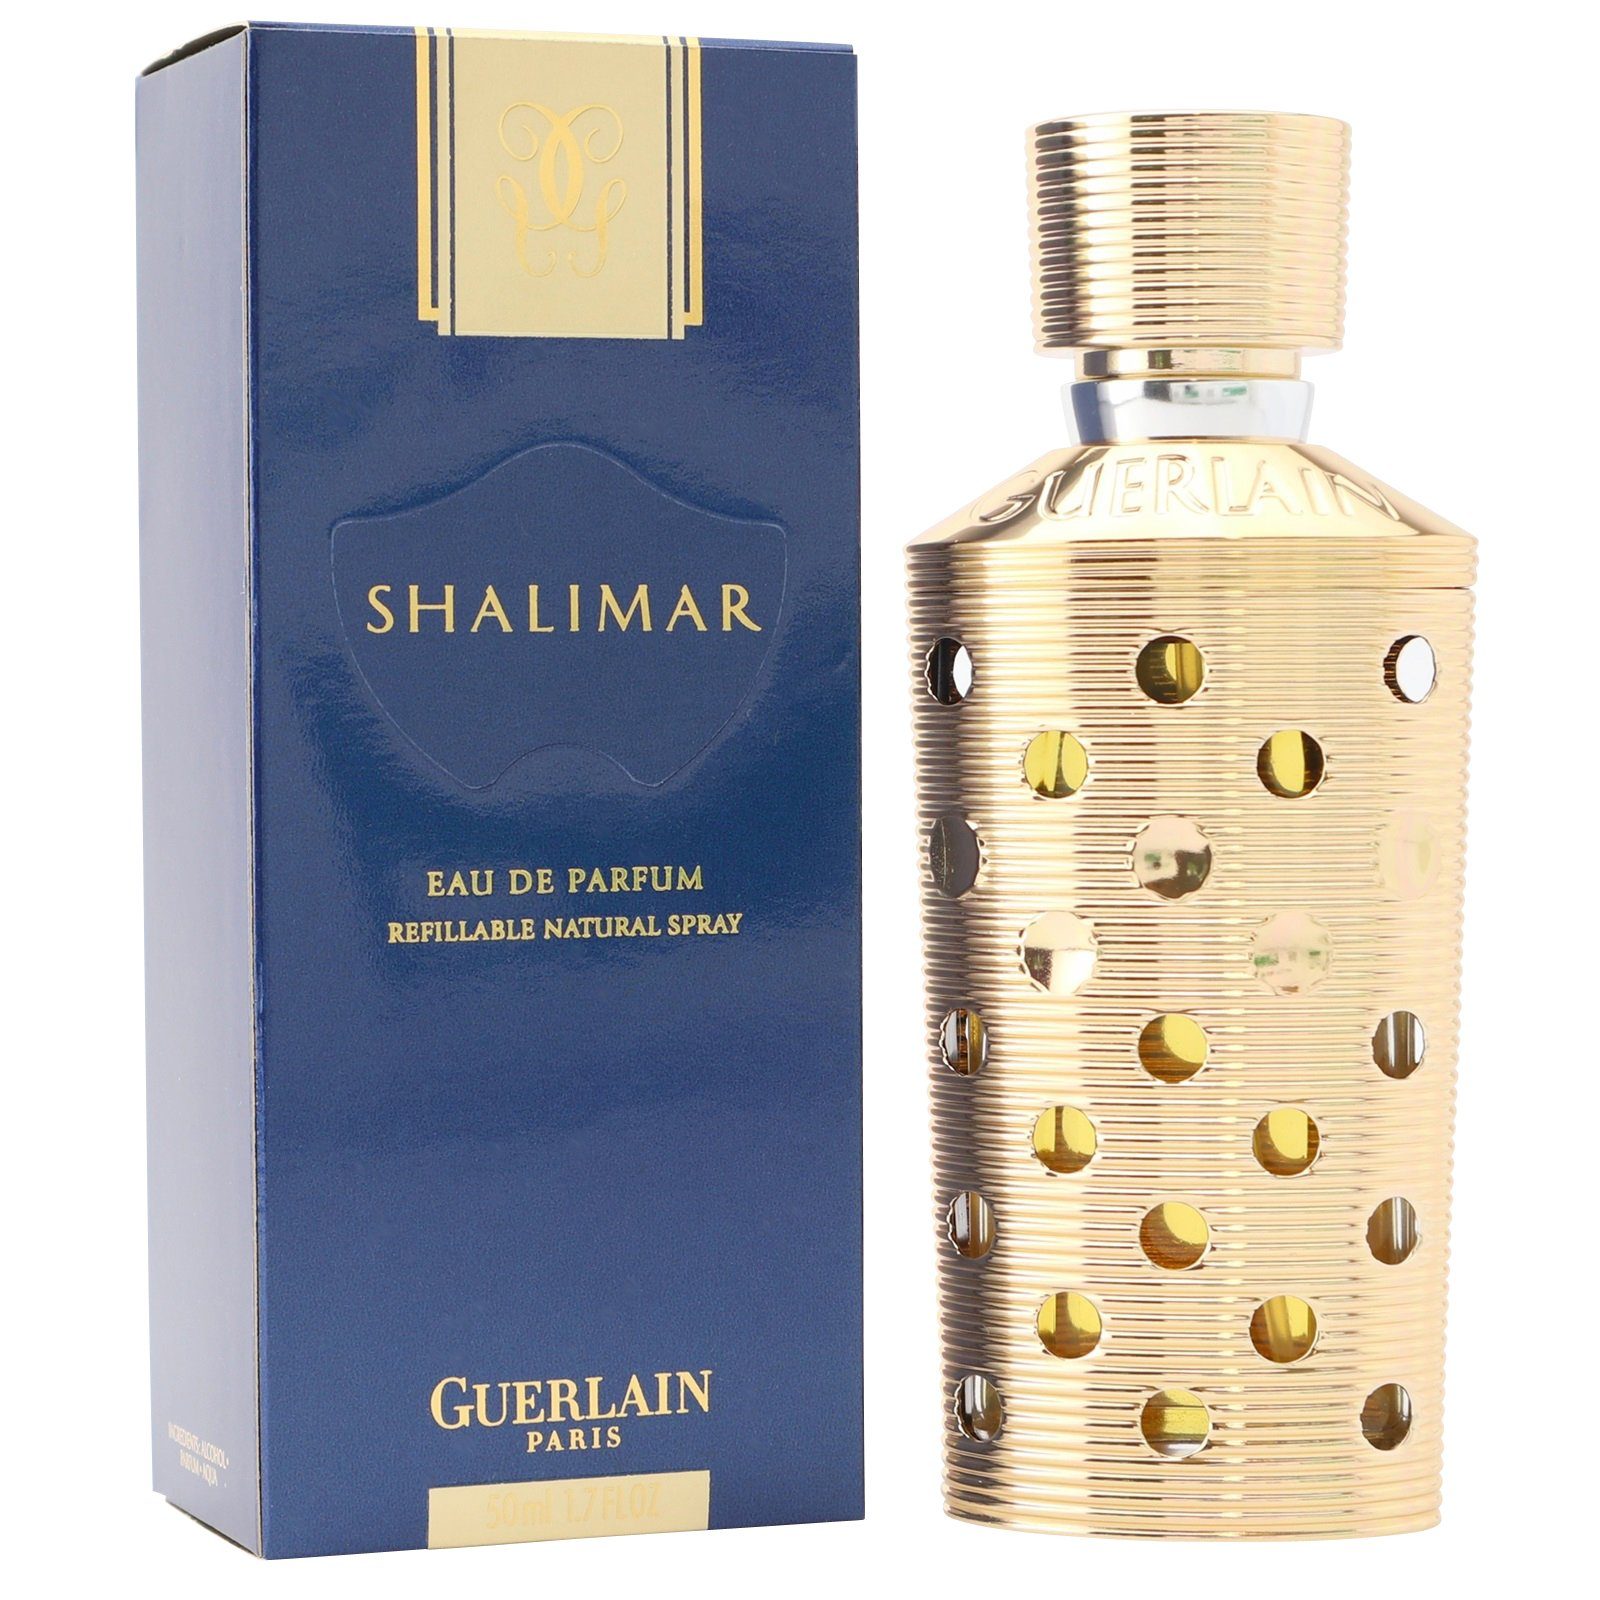 GUERLAIN Eau de Parfum Guerlain Shalimar Eau de Parfum Spray 50 ml refillable / rechargeable